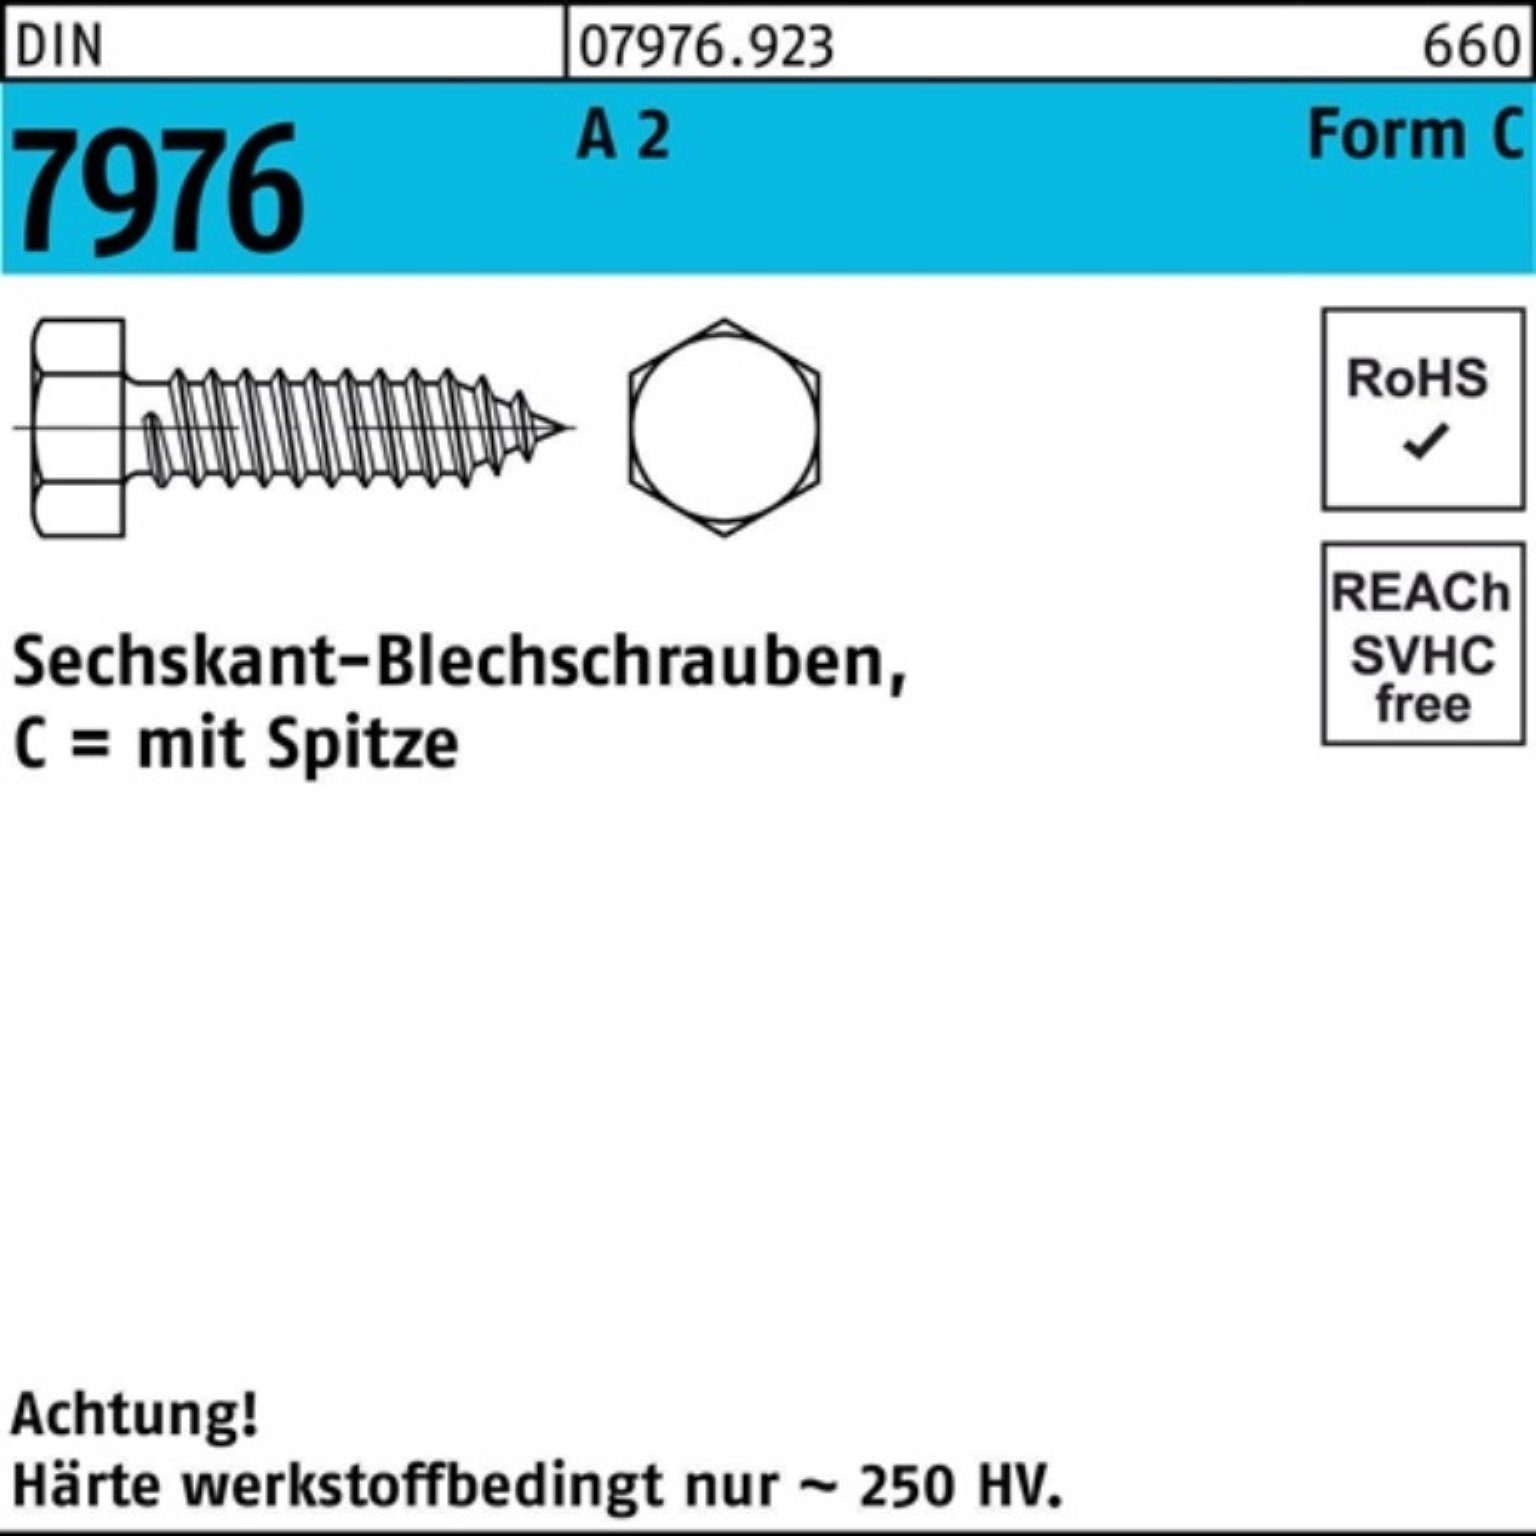 Reyher Blechschraube 500er Pack 500 45 Blechschraube Sechskant/Spitze S 3,9x 7976 C DIN 2 A